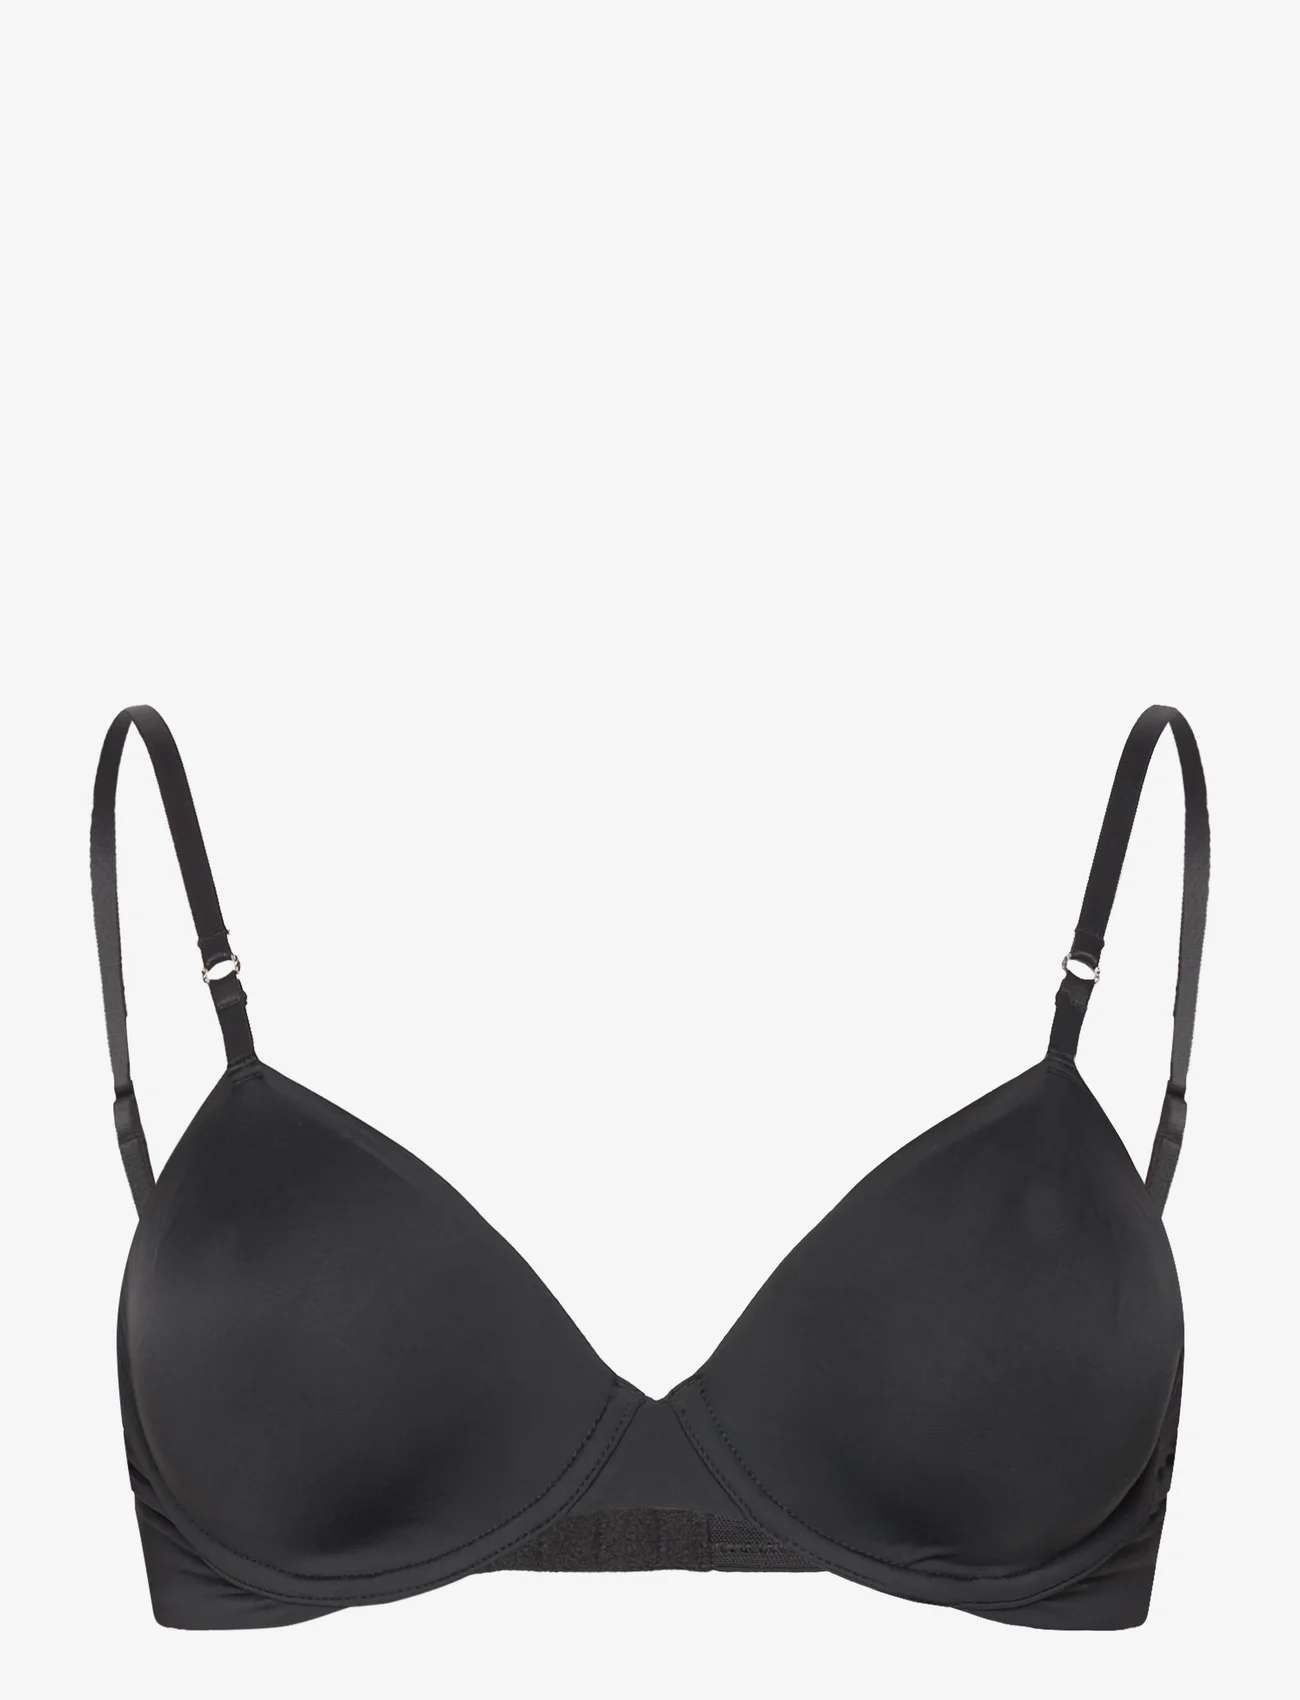 Calvin Klein - UNLINED DEMI - wired bras - black - 0